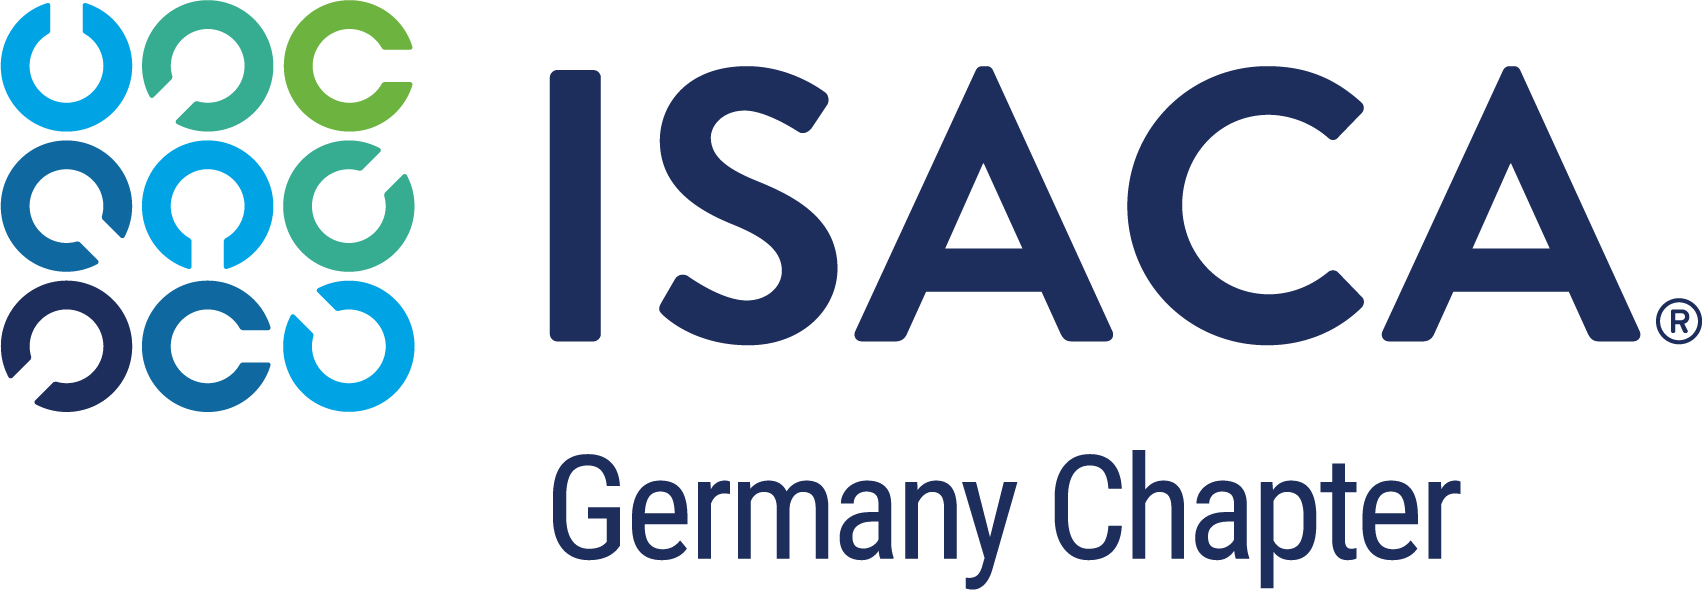 ISACA Germany Chapter e. V."